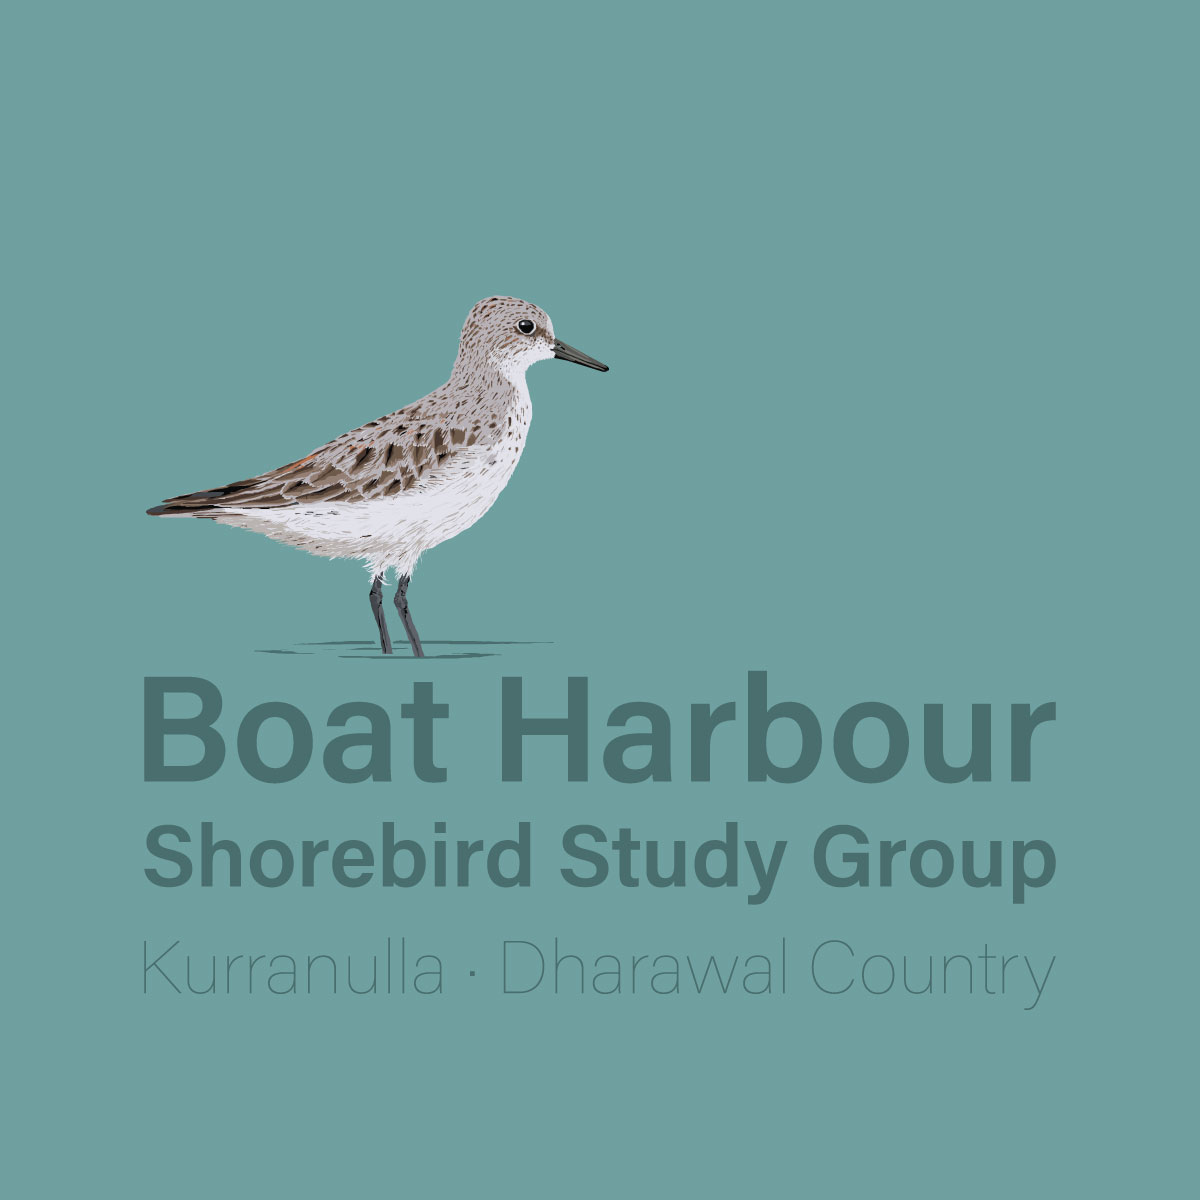 Boat Harbour Shorebirds